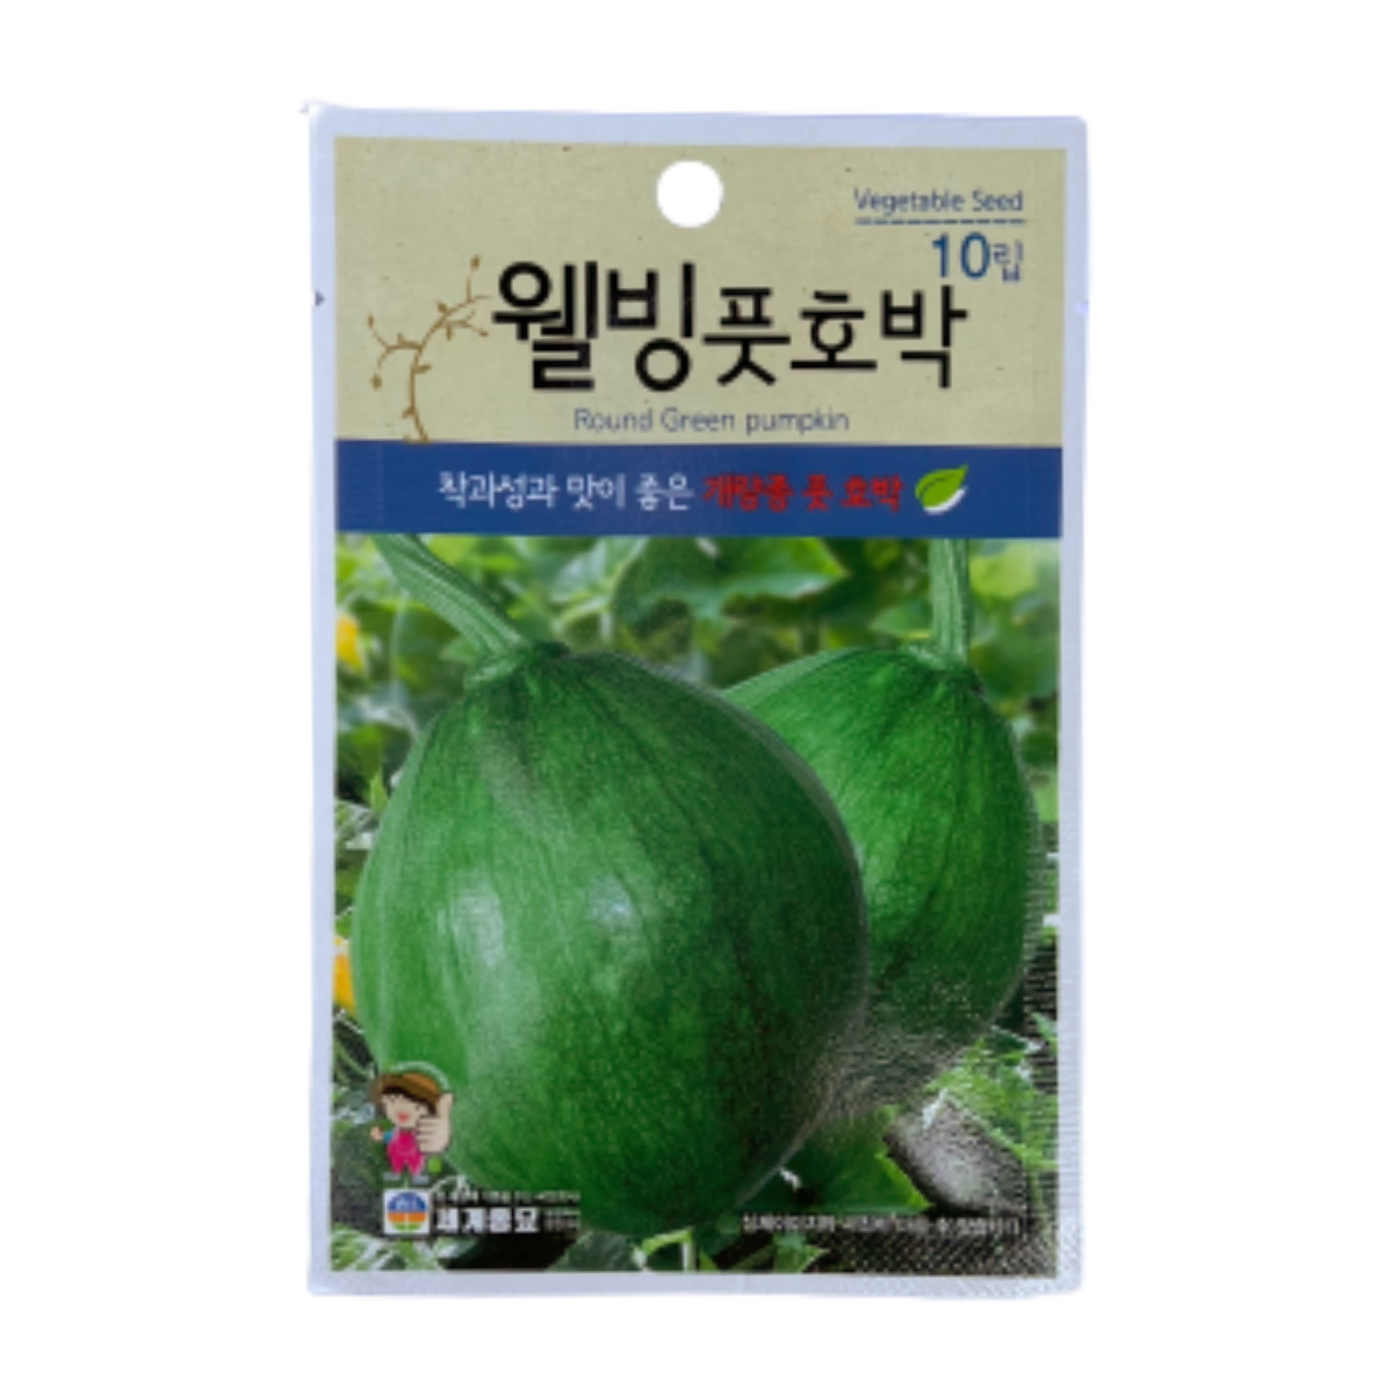 #[World seedlings] Well -being green pumpkin (10 lip)